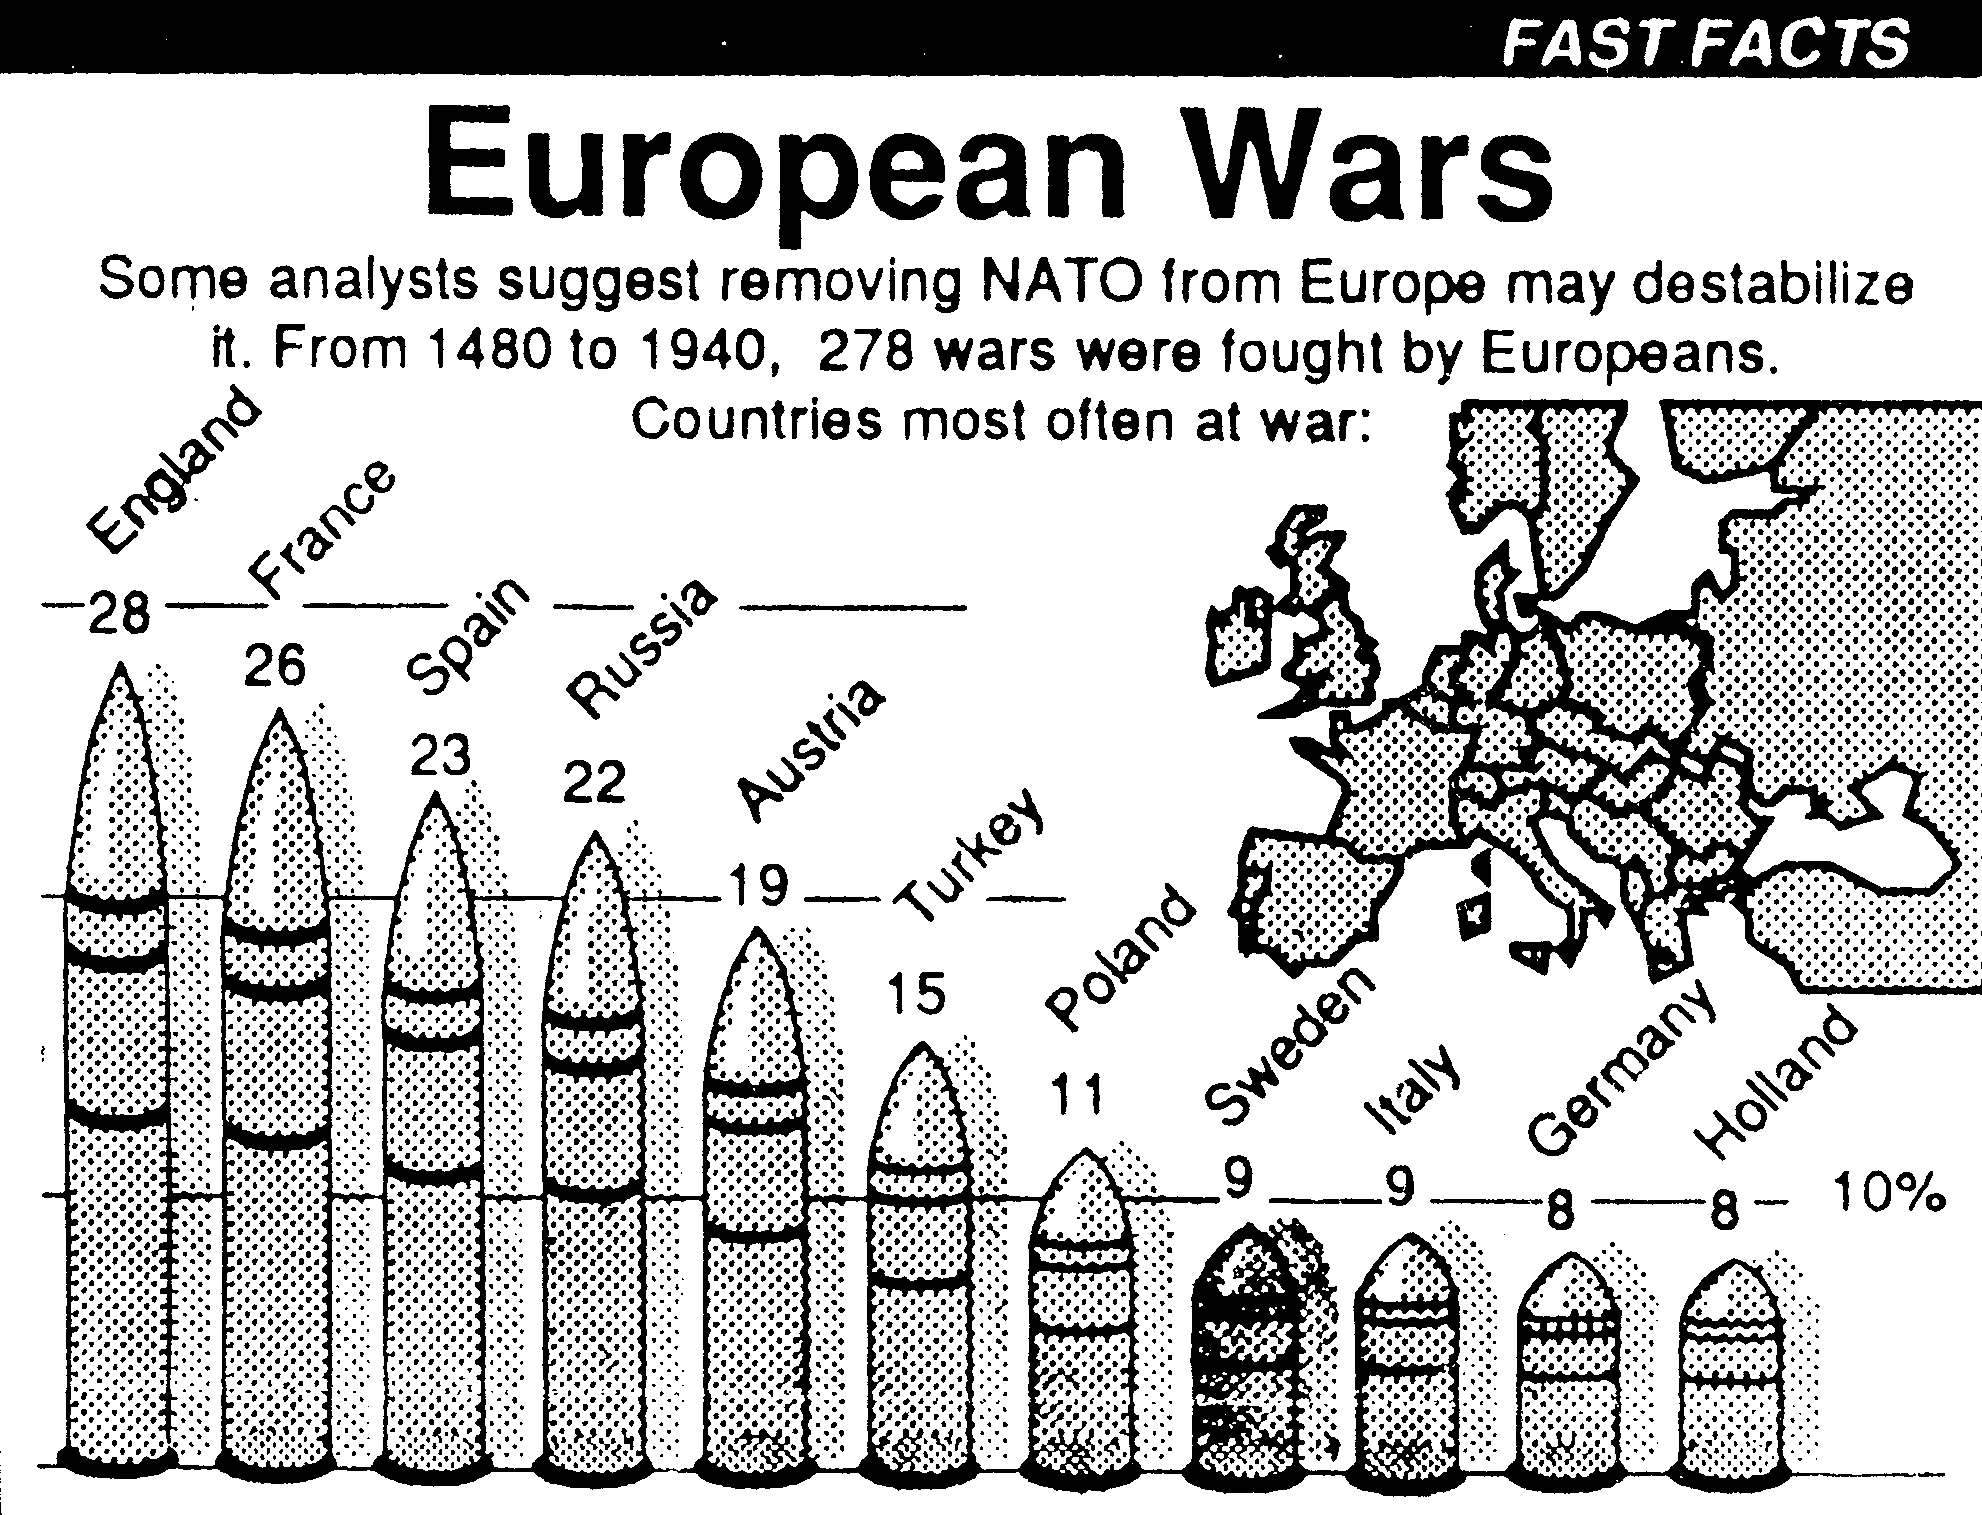 Az európai országok által megvívott háborúk száma 1480 és 1940 között. A német adat persze nagyon alacsonynak tűnik, talán csak 1871-től számítják, de valószínűleg egyébként se lettek volna esélyeik a dobogós helyezésre.